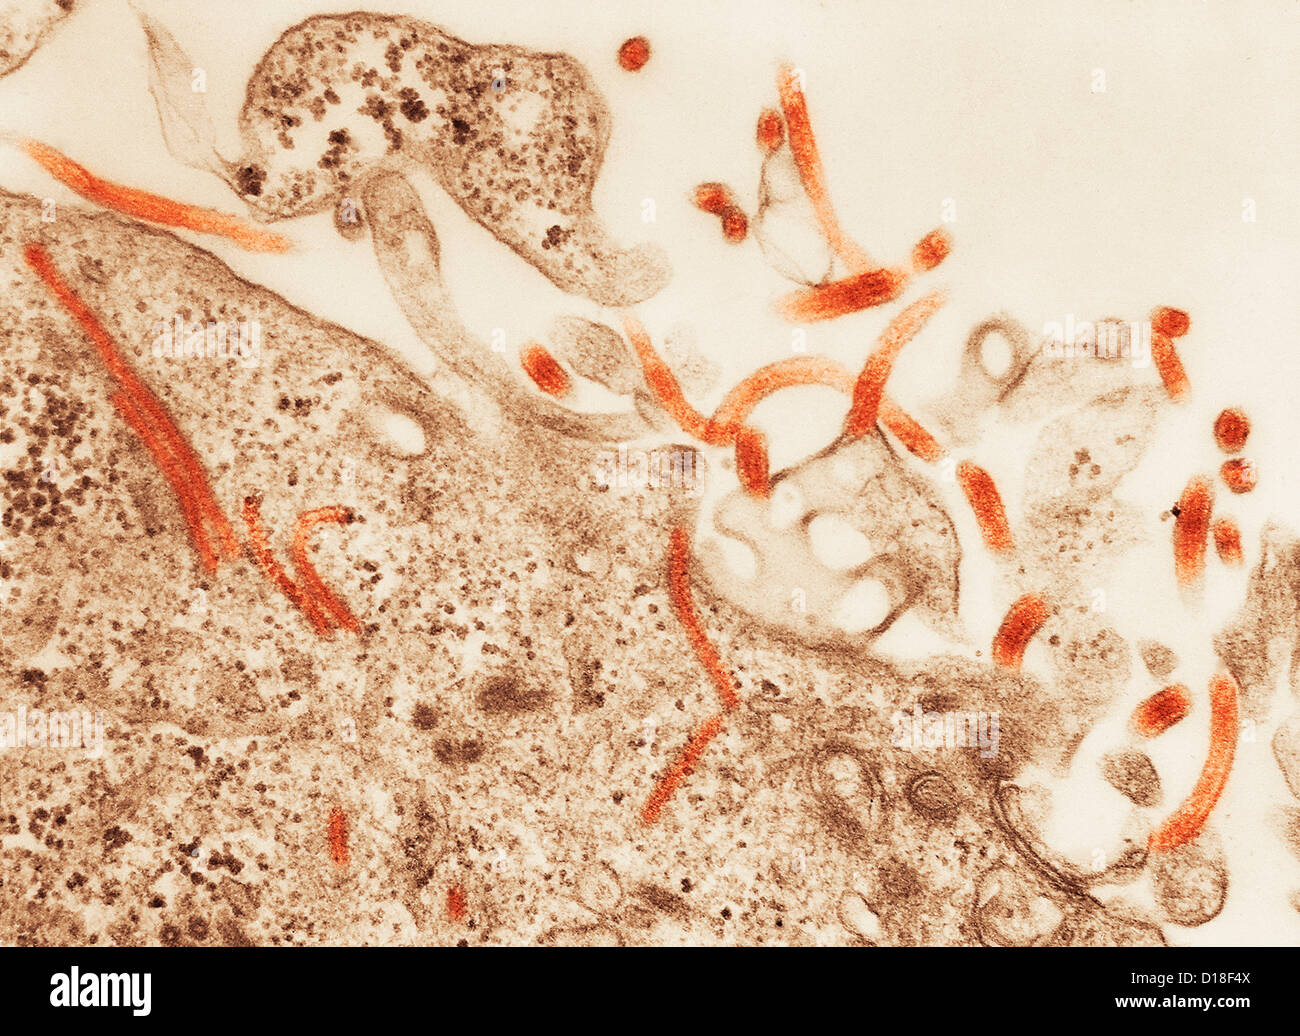 Microscopio elettronico a trasmissione del virus Ebola Foto Stock